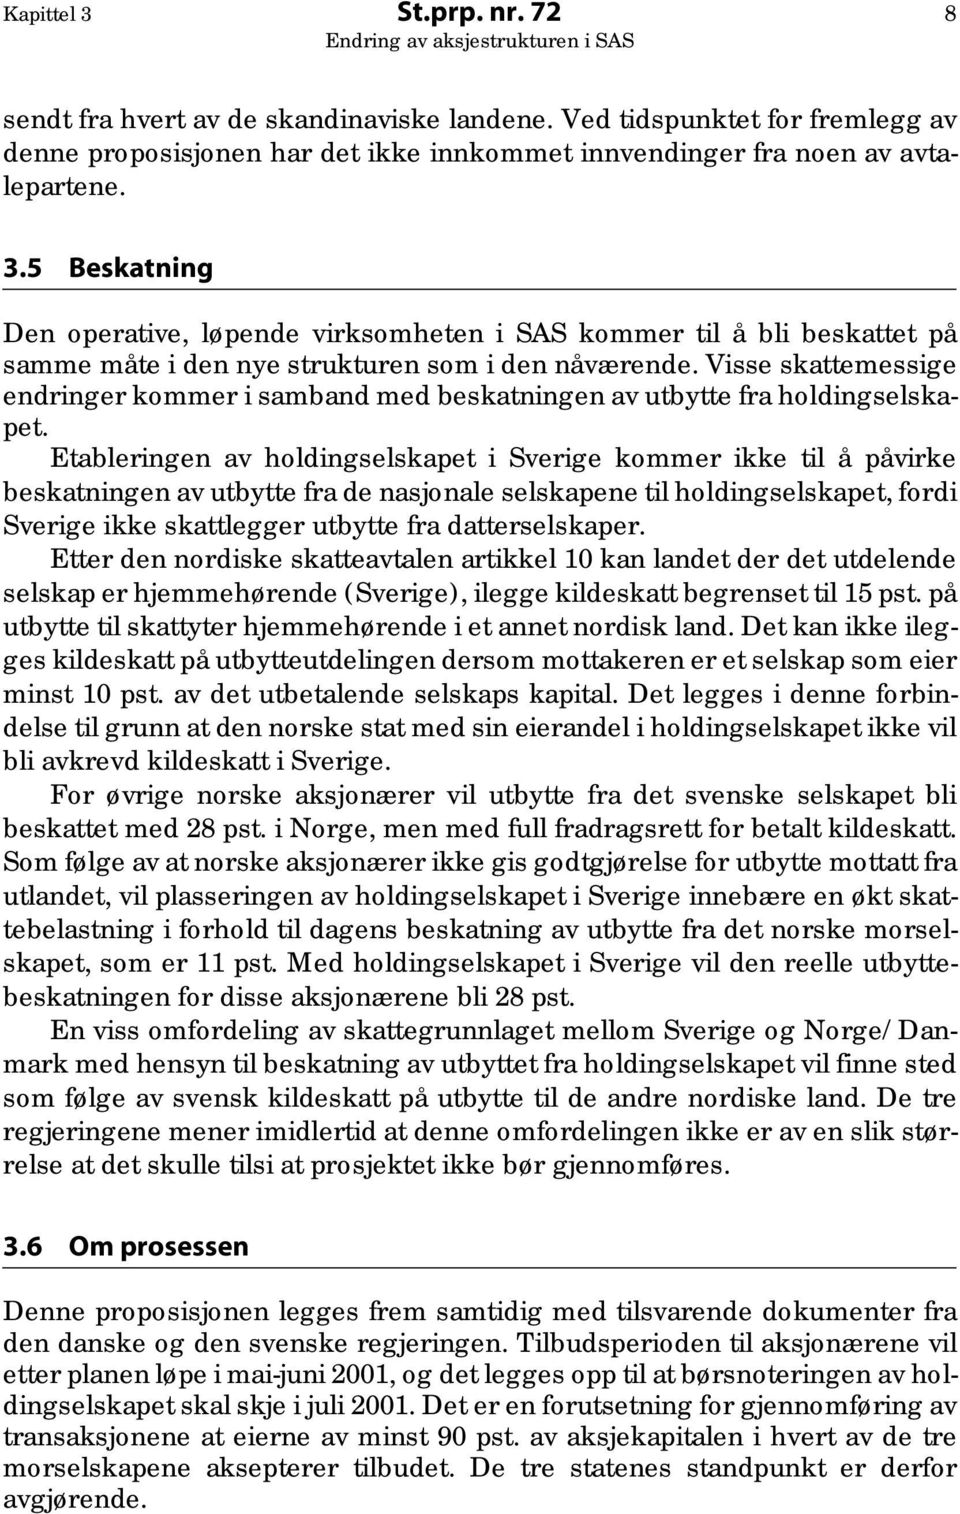 Etableringen av holdingselskapet i Sverige kommer ikke til å påvirke beskatningen av utbytte fra de nasjonale selskapene til holdingselskapet, fordi Sverige ikke skattlegger utbytte fra